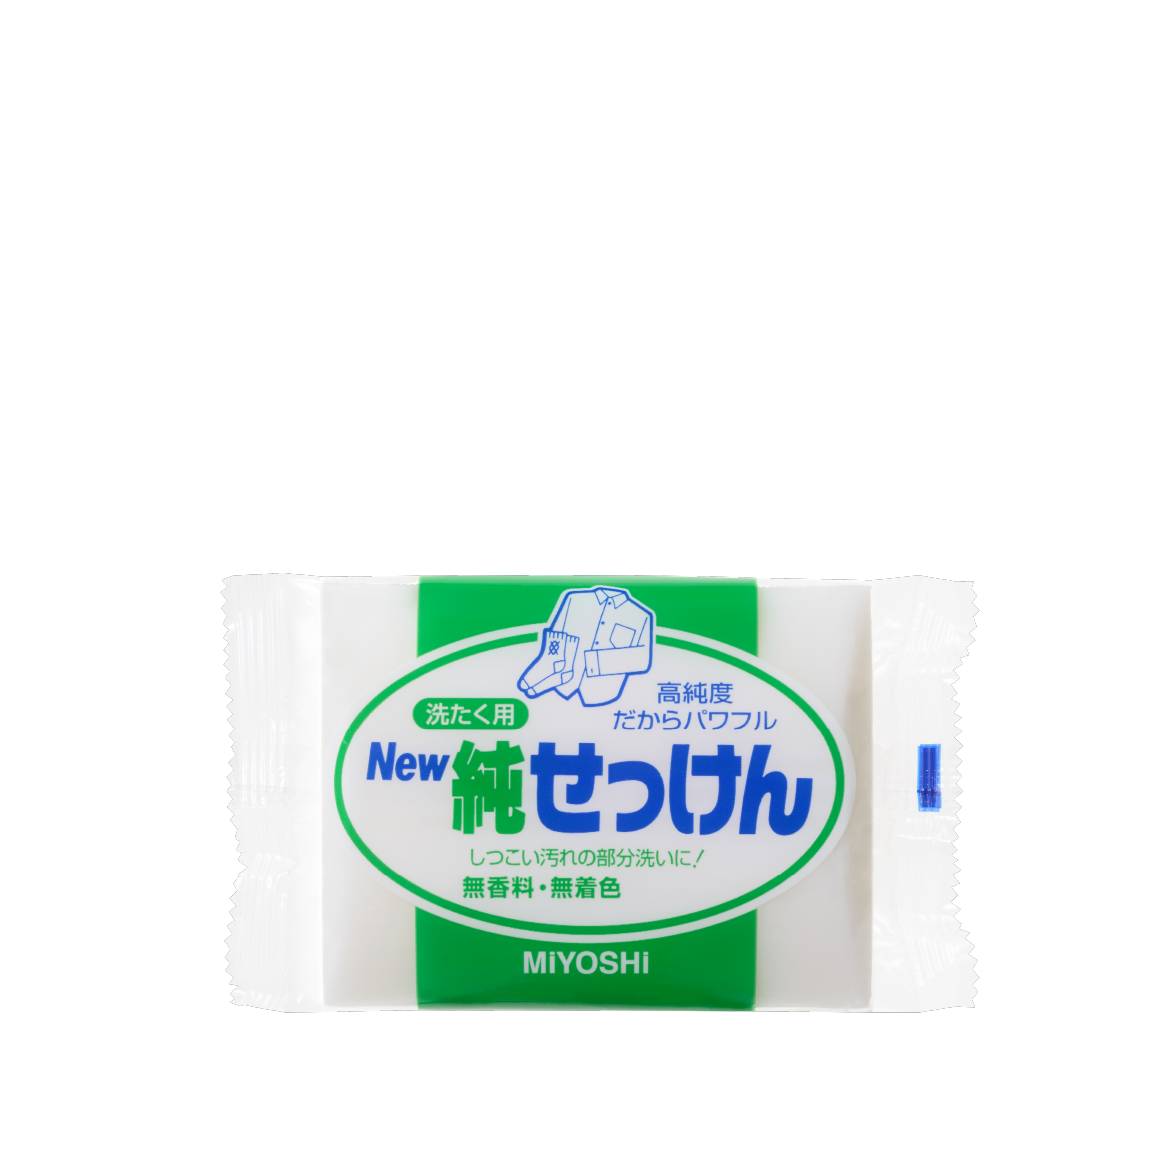 New純せっけん<br>190g</br> - MIYOSHI SOAP CORPORATION